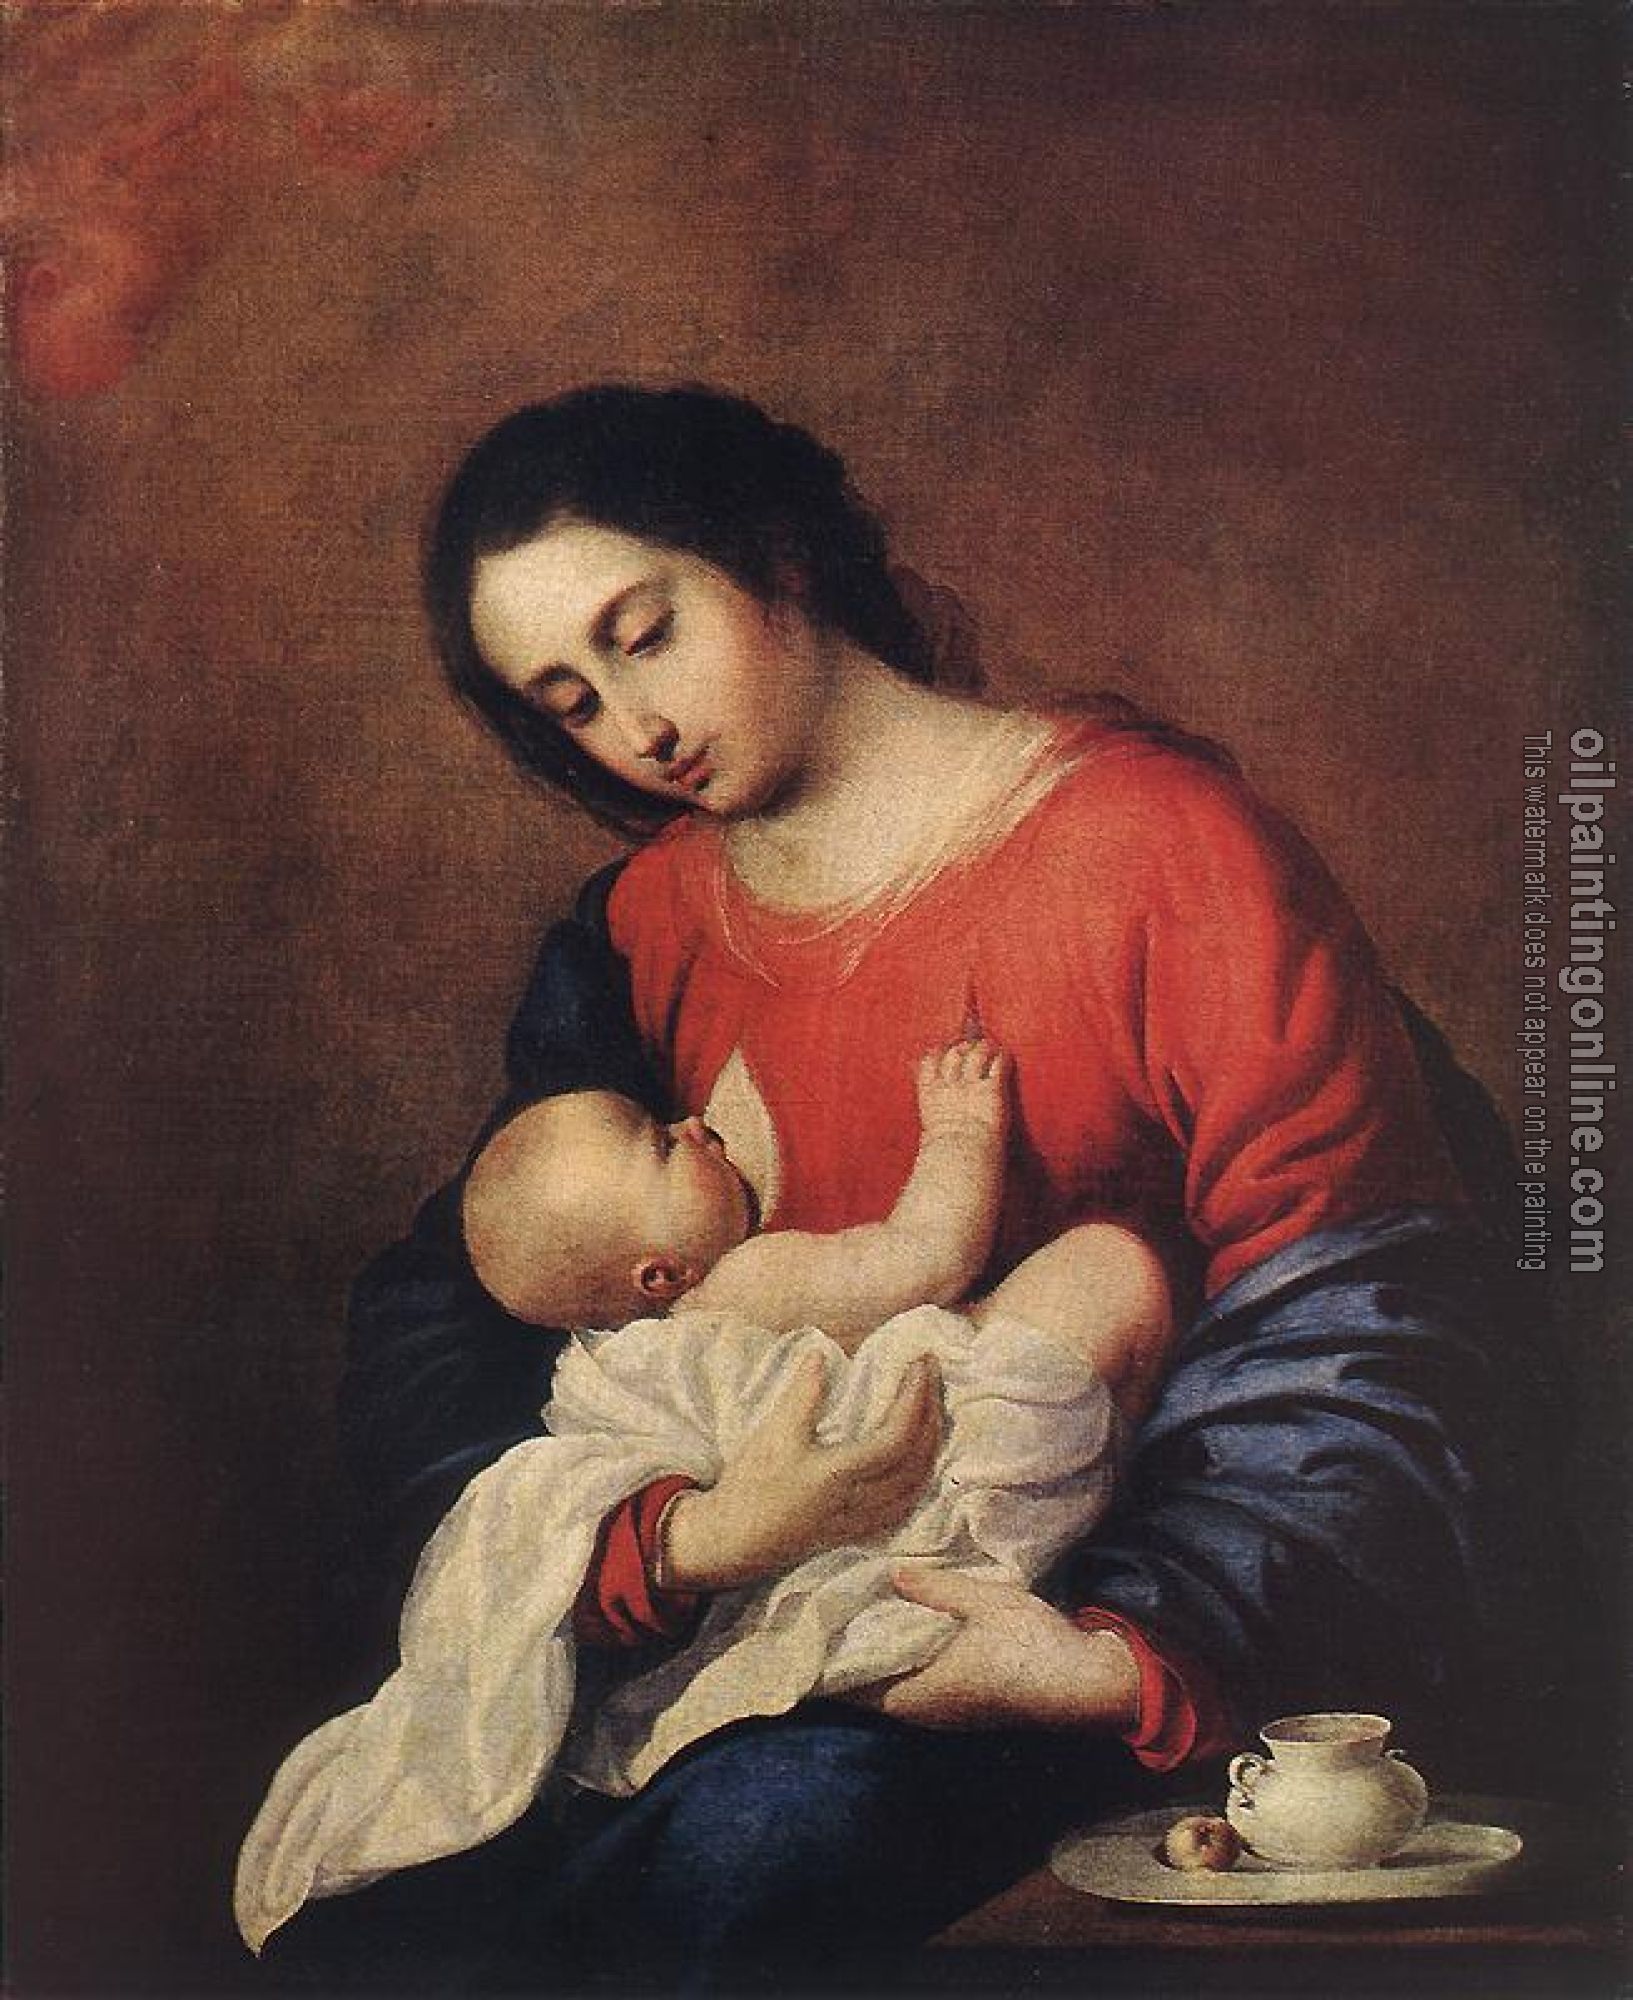 Zurbaran, Francisco de - Madonna with Child